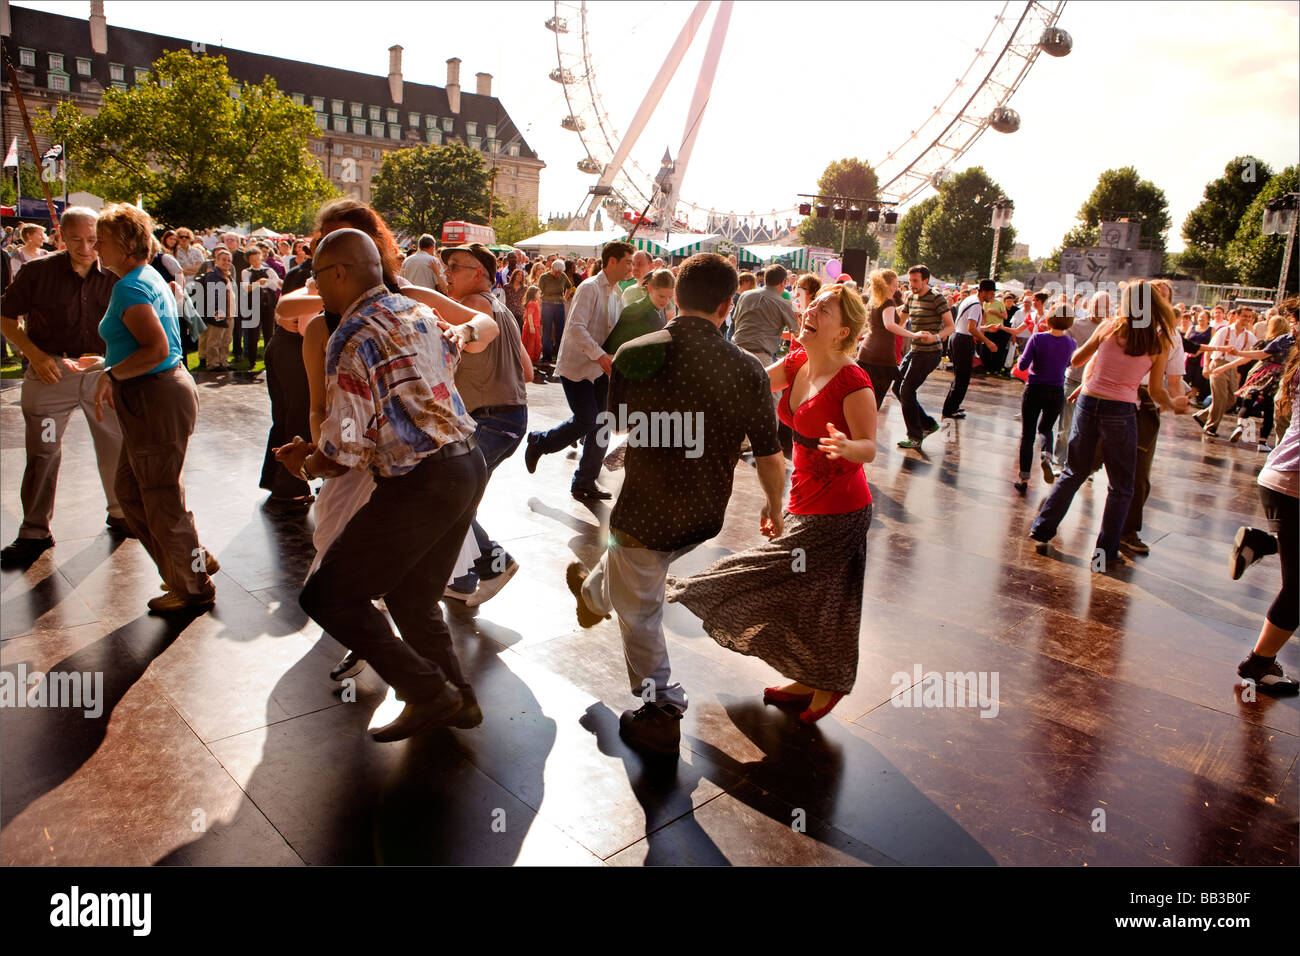 Les gens danser au Festival de Southbank, Londres, Royaume-Uni. Banque D'Images